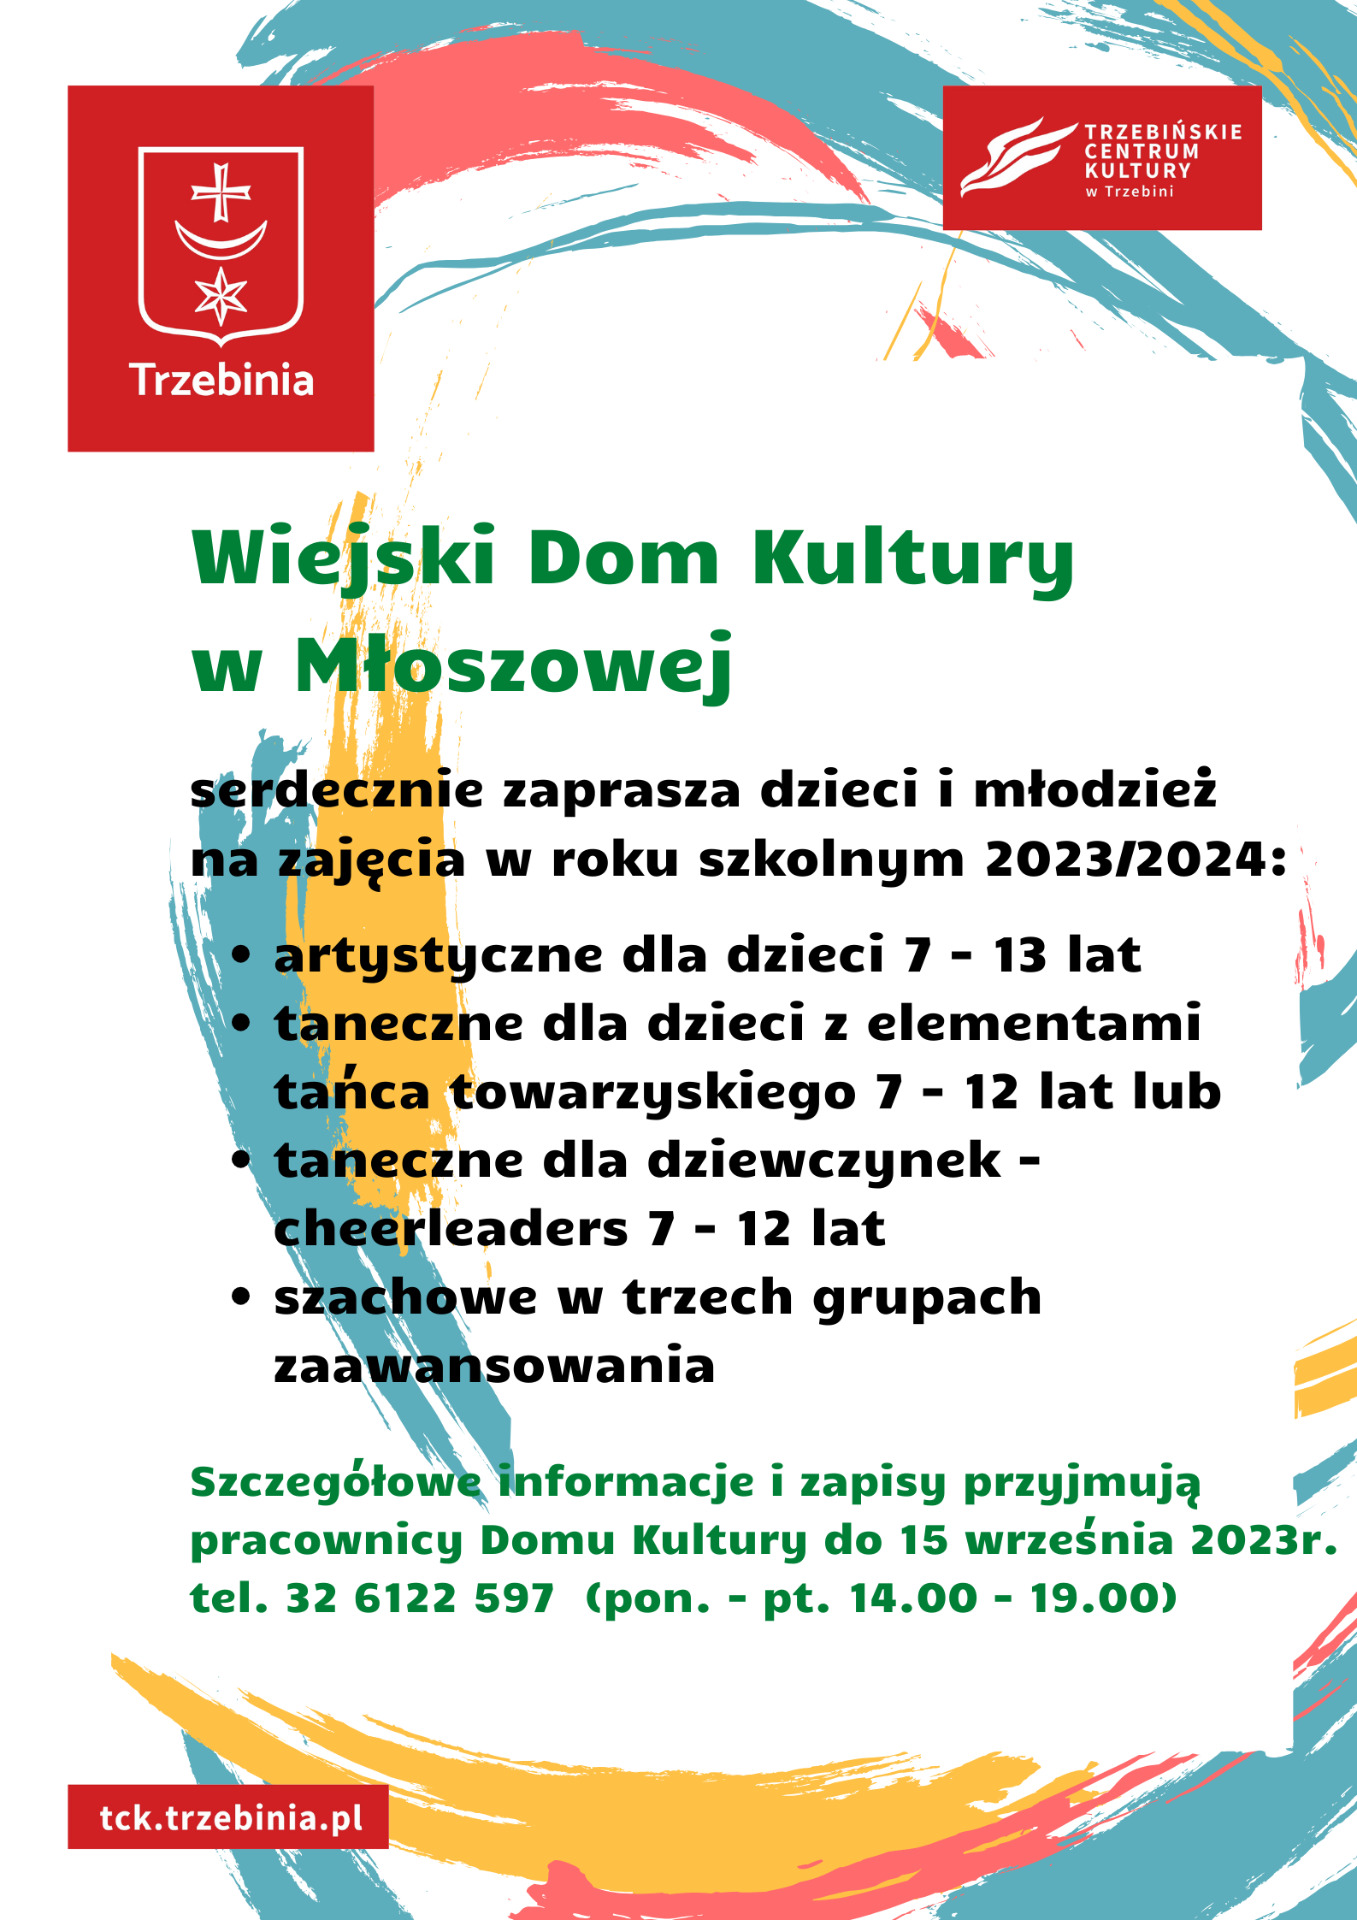 Oferta WDK w Młoszowej  - Obrazek 1